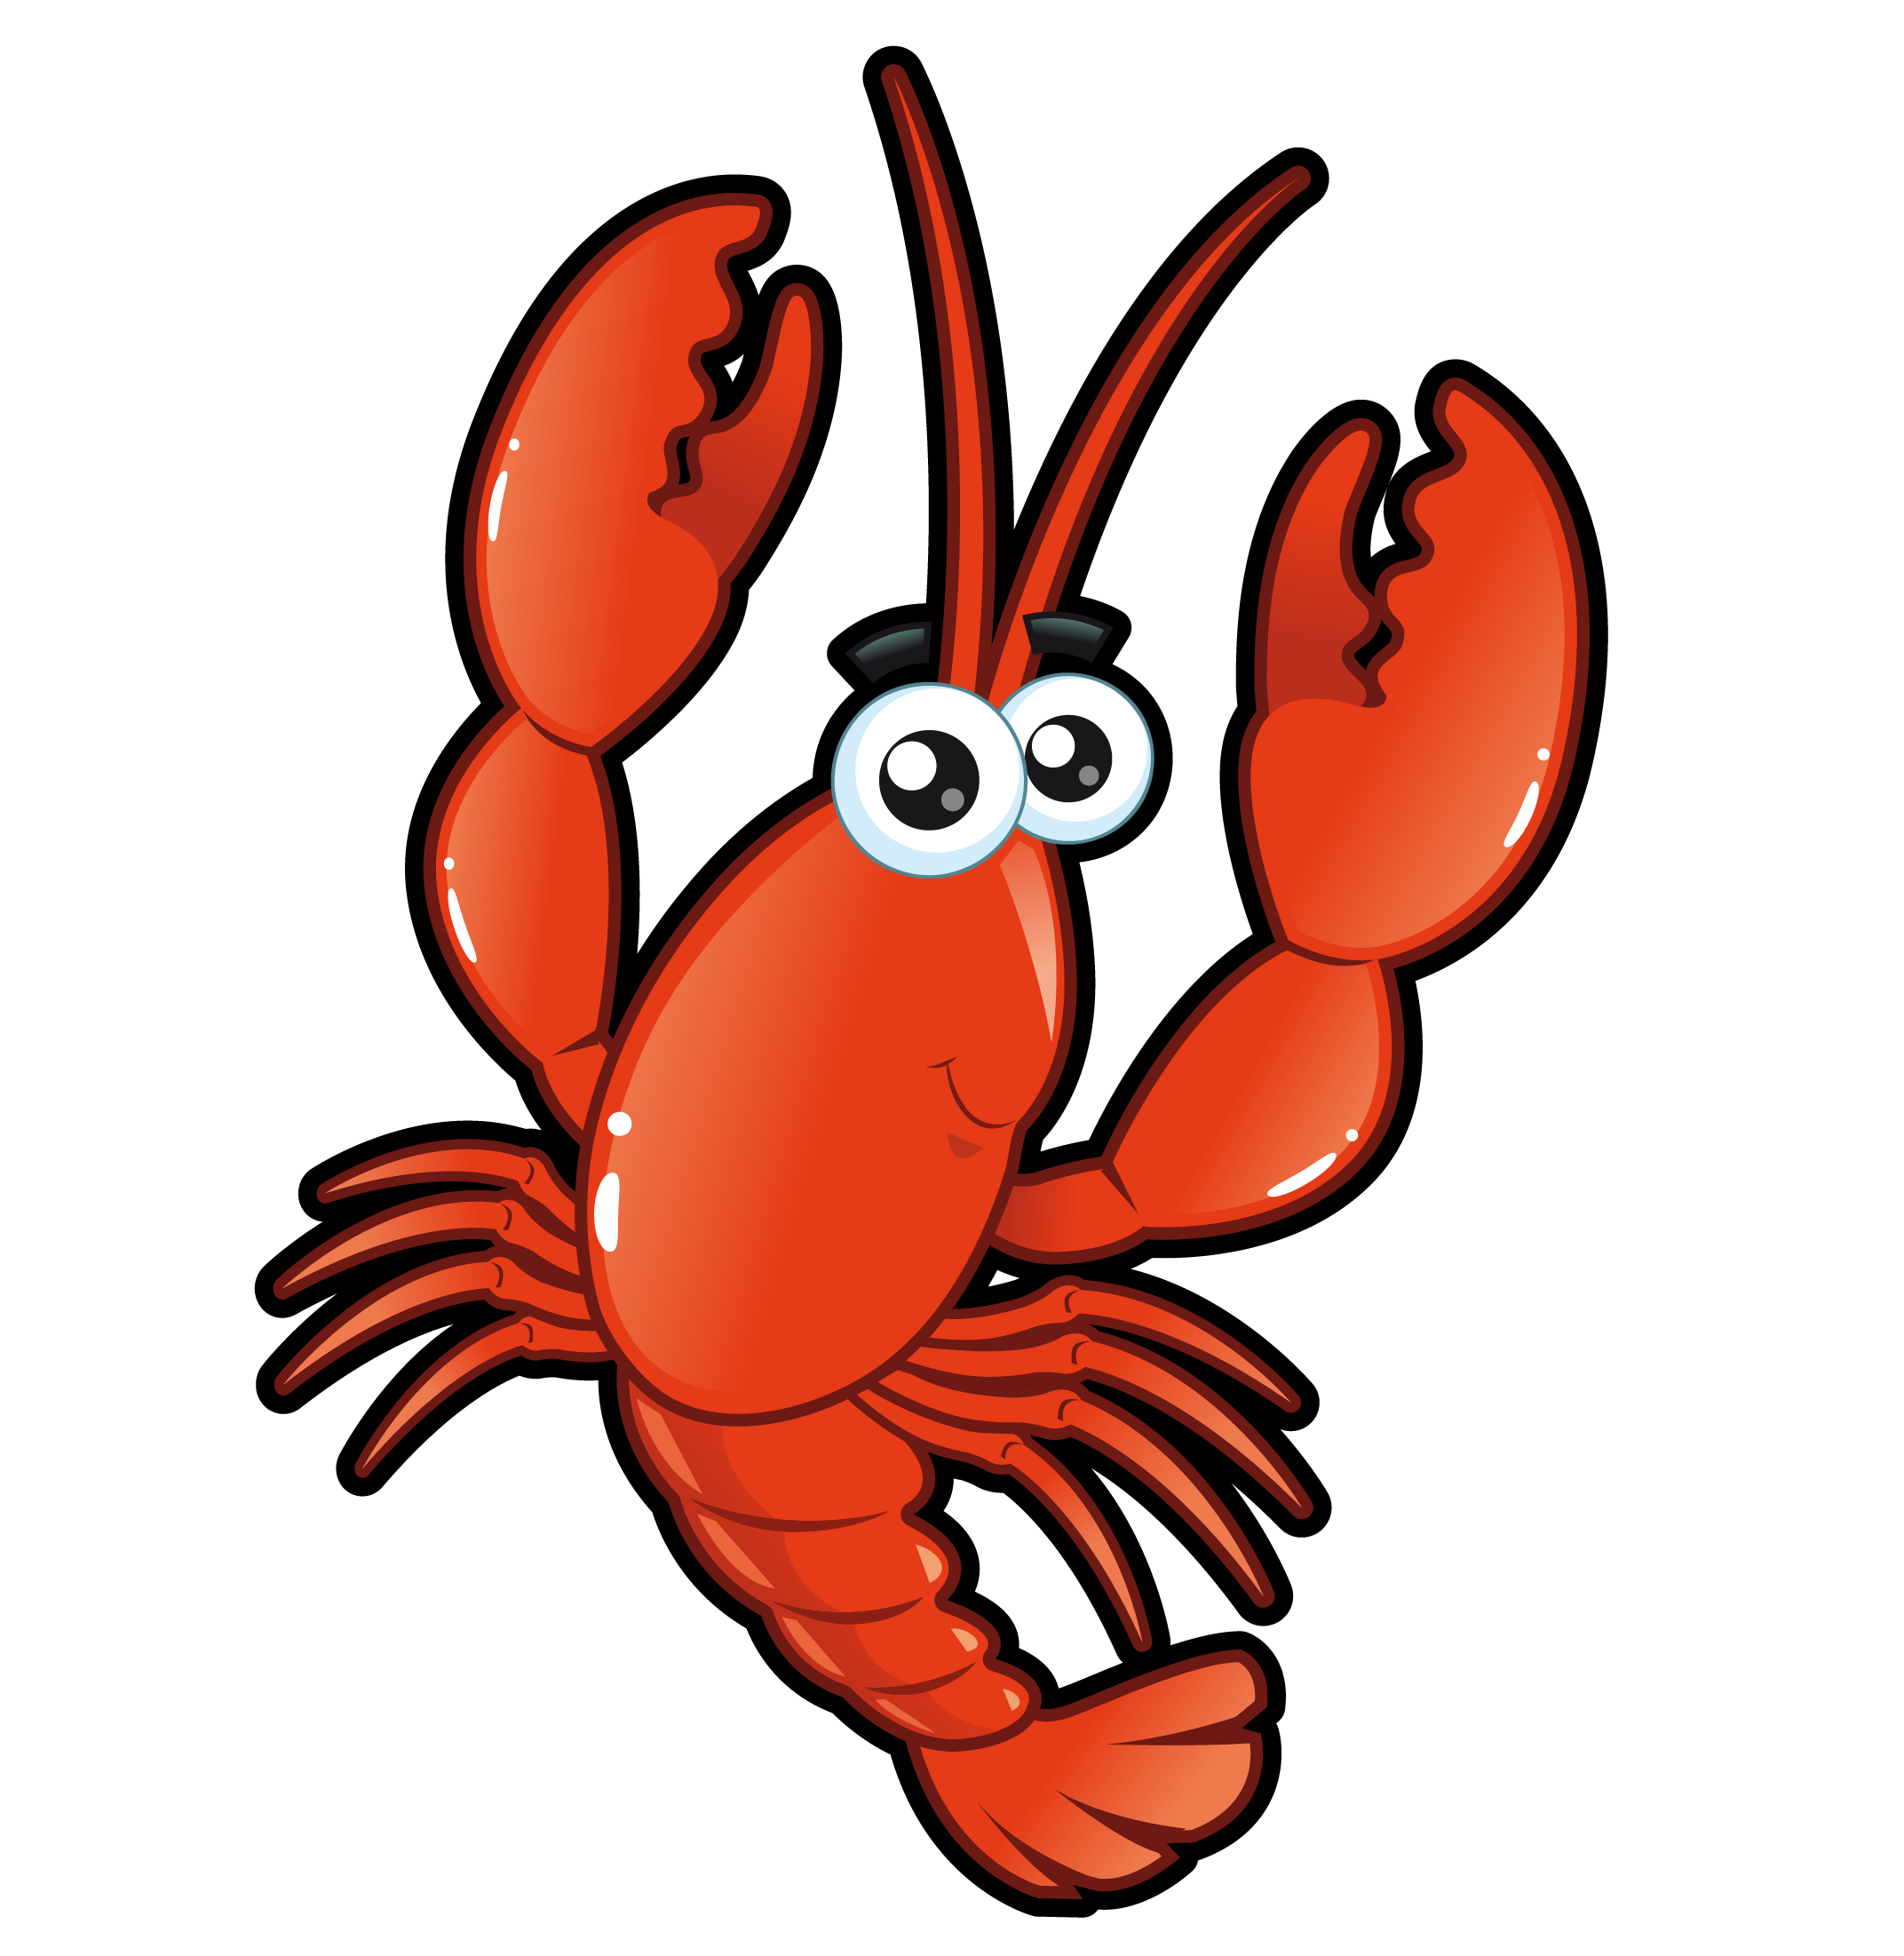 Homarus Cartoon Lobster roll Drawing - Cartoon vector lobster vector ...